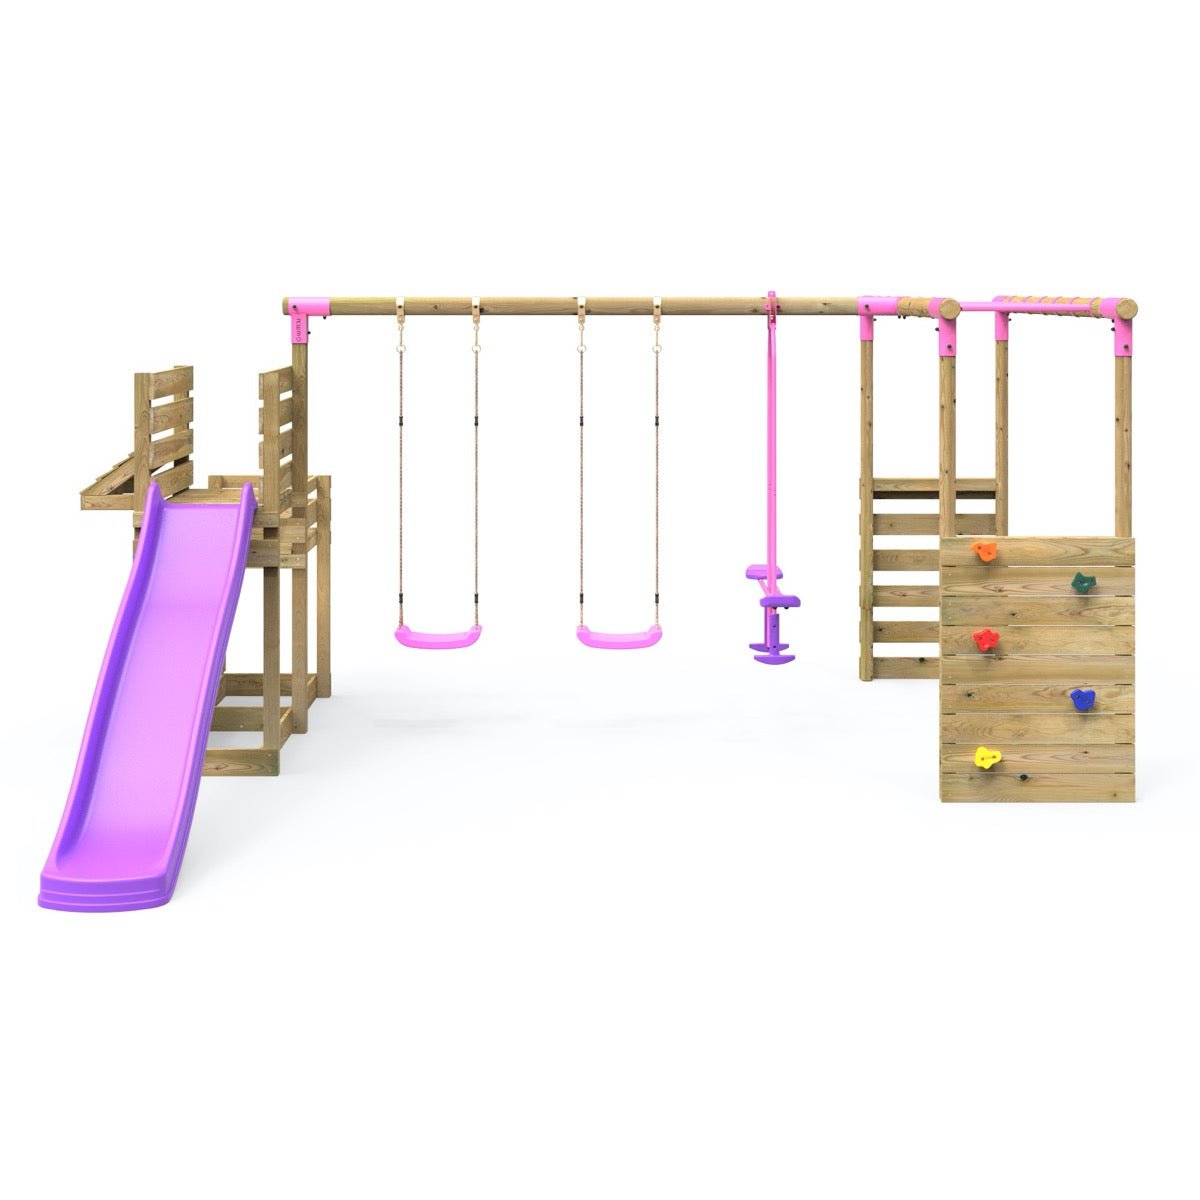 Rebo Wooden Swing Set plus Deluxe Deck, 8FT Slide & Monkey Bars - Neptune Pink